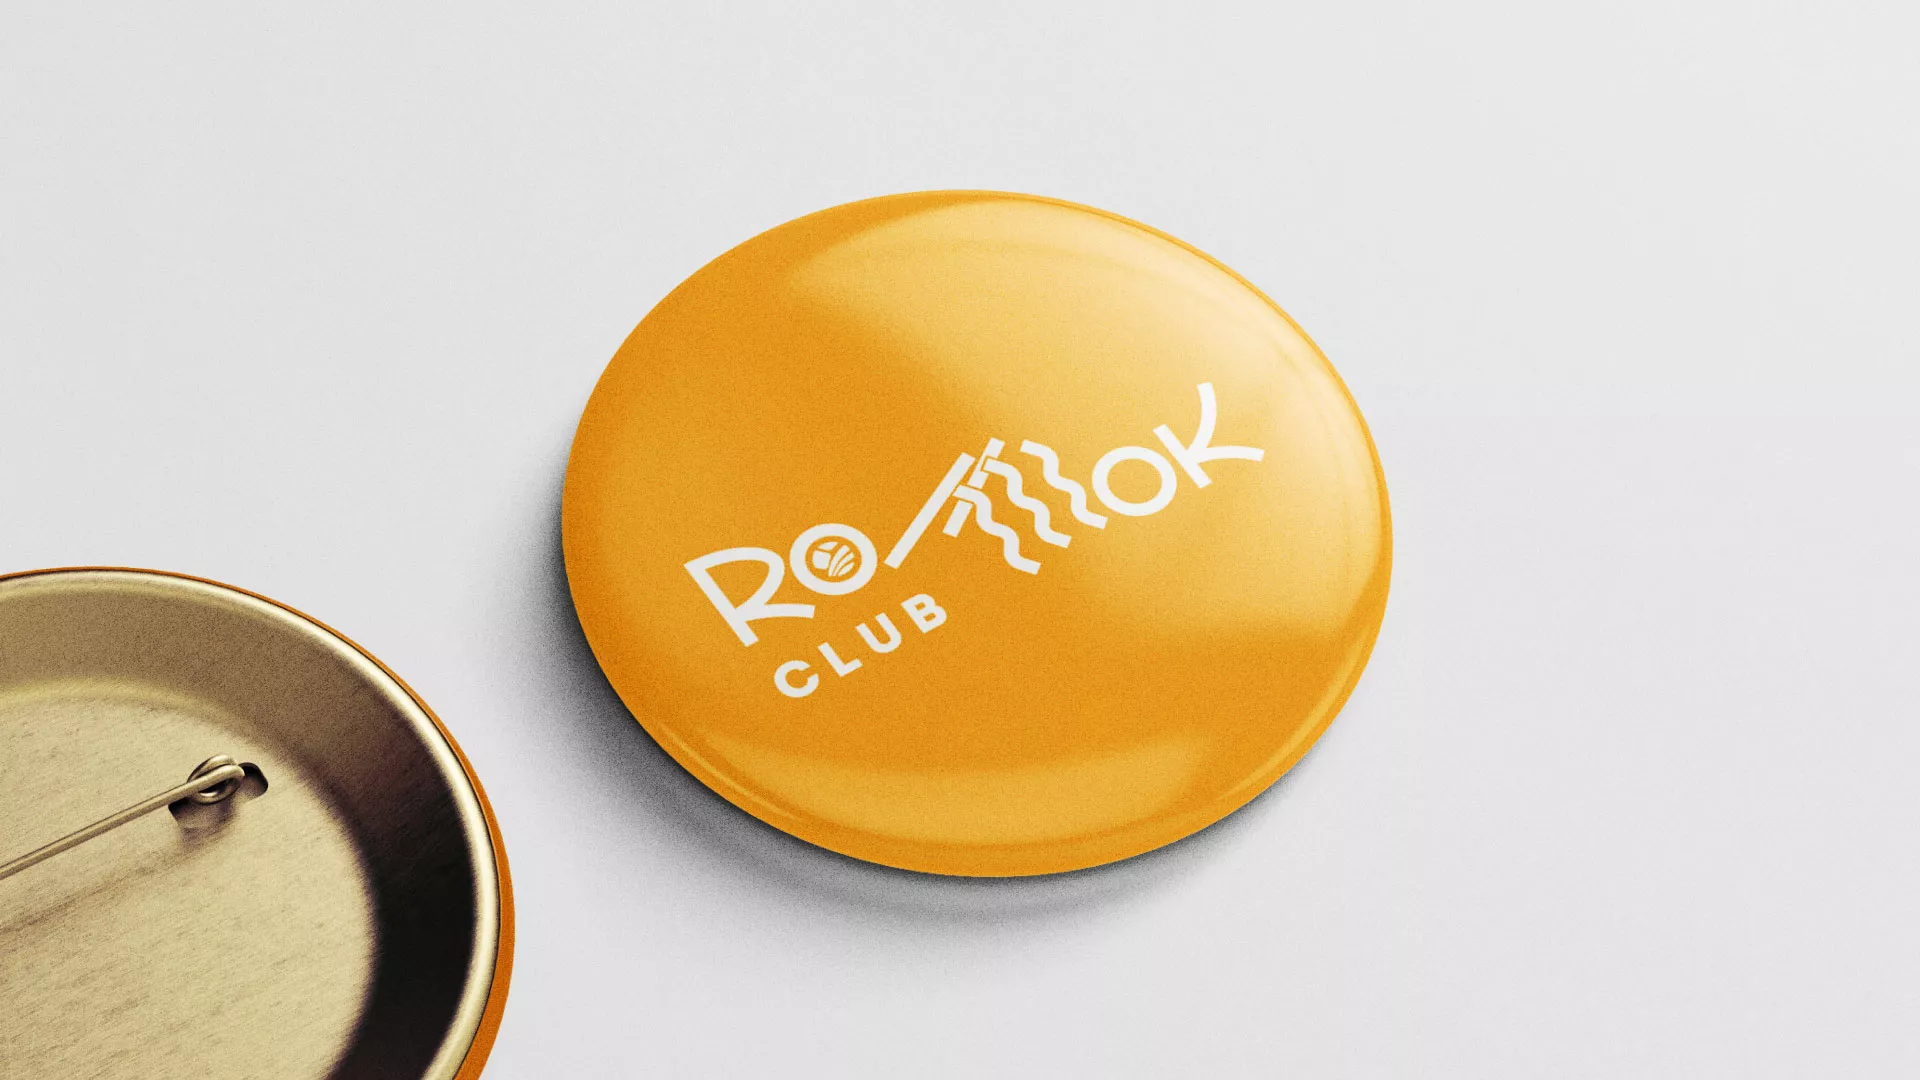 Создание логотипа суши-бара «Roll Wok Club» в Выксе